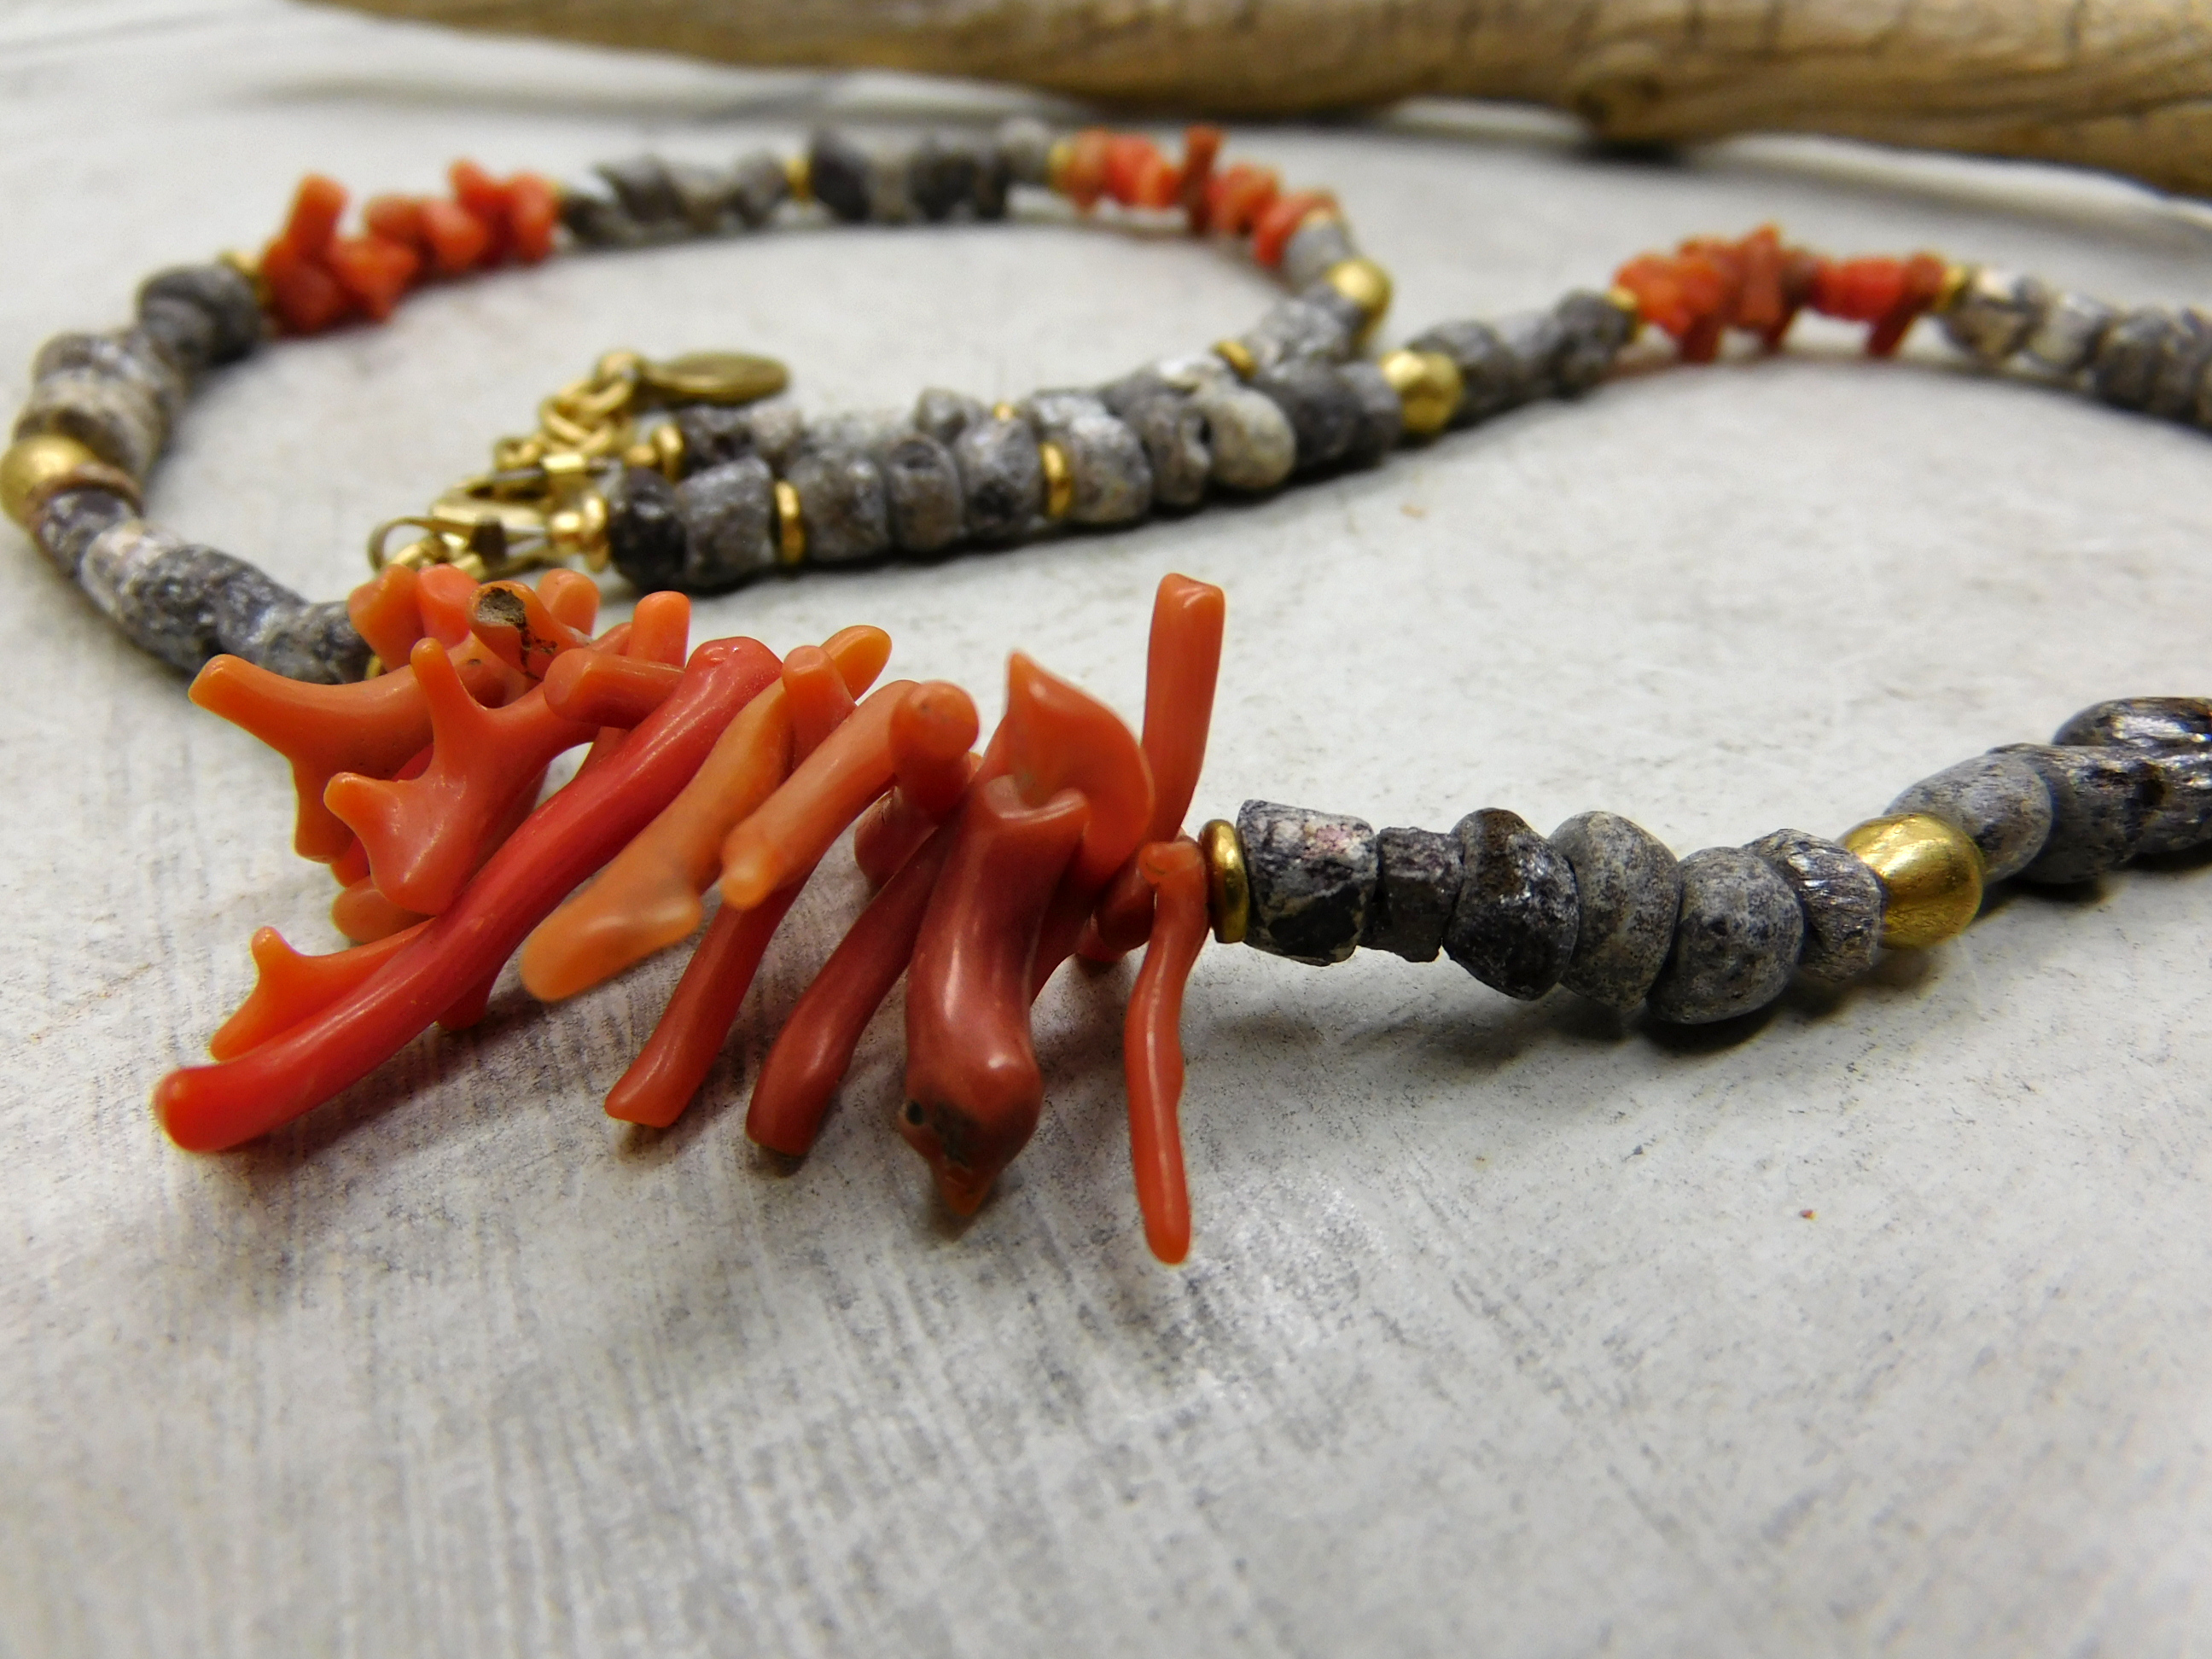 Halskette - antike Djenné-Glasperlen und Ast-Koralle aus Afrika